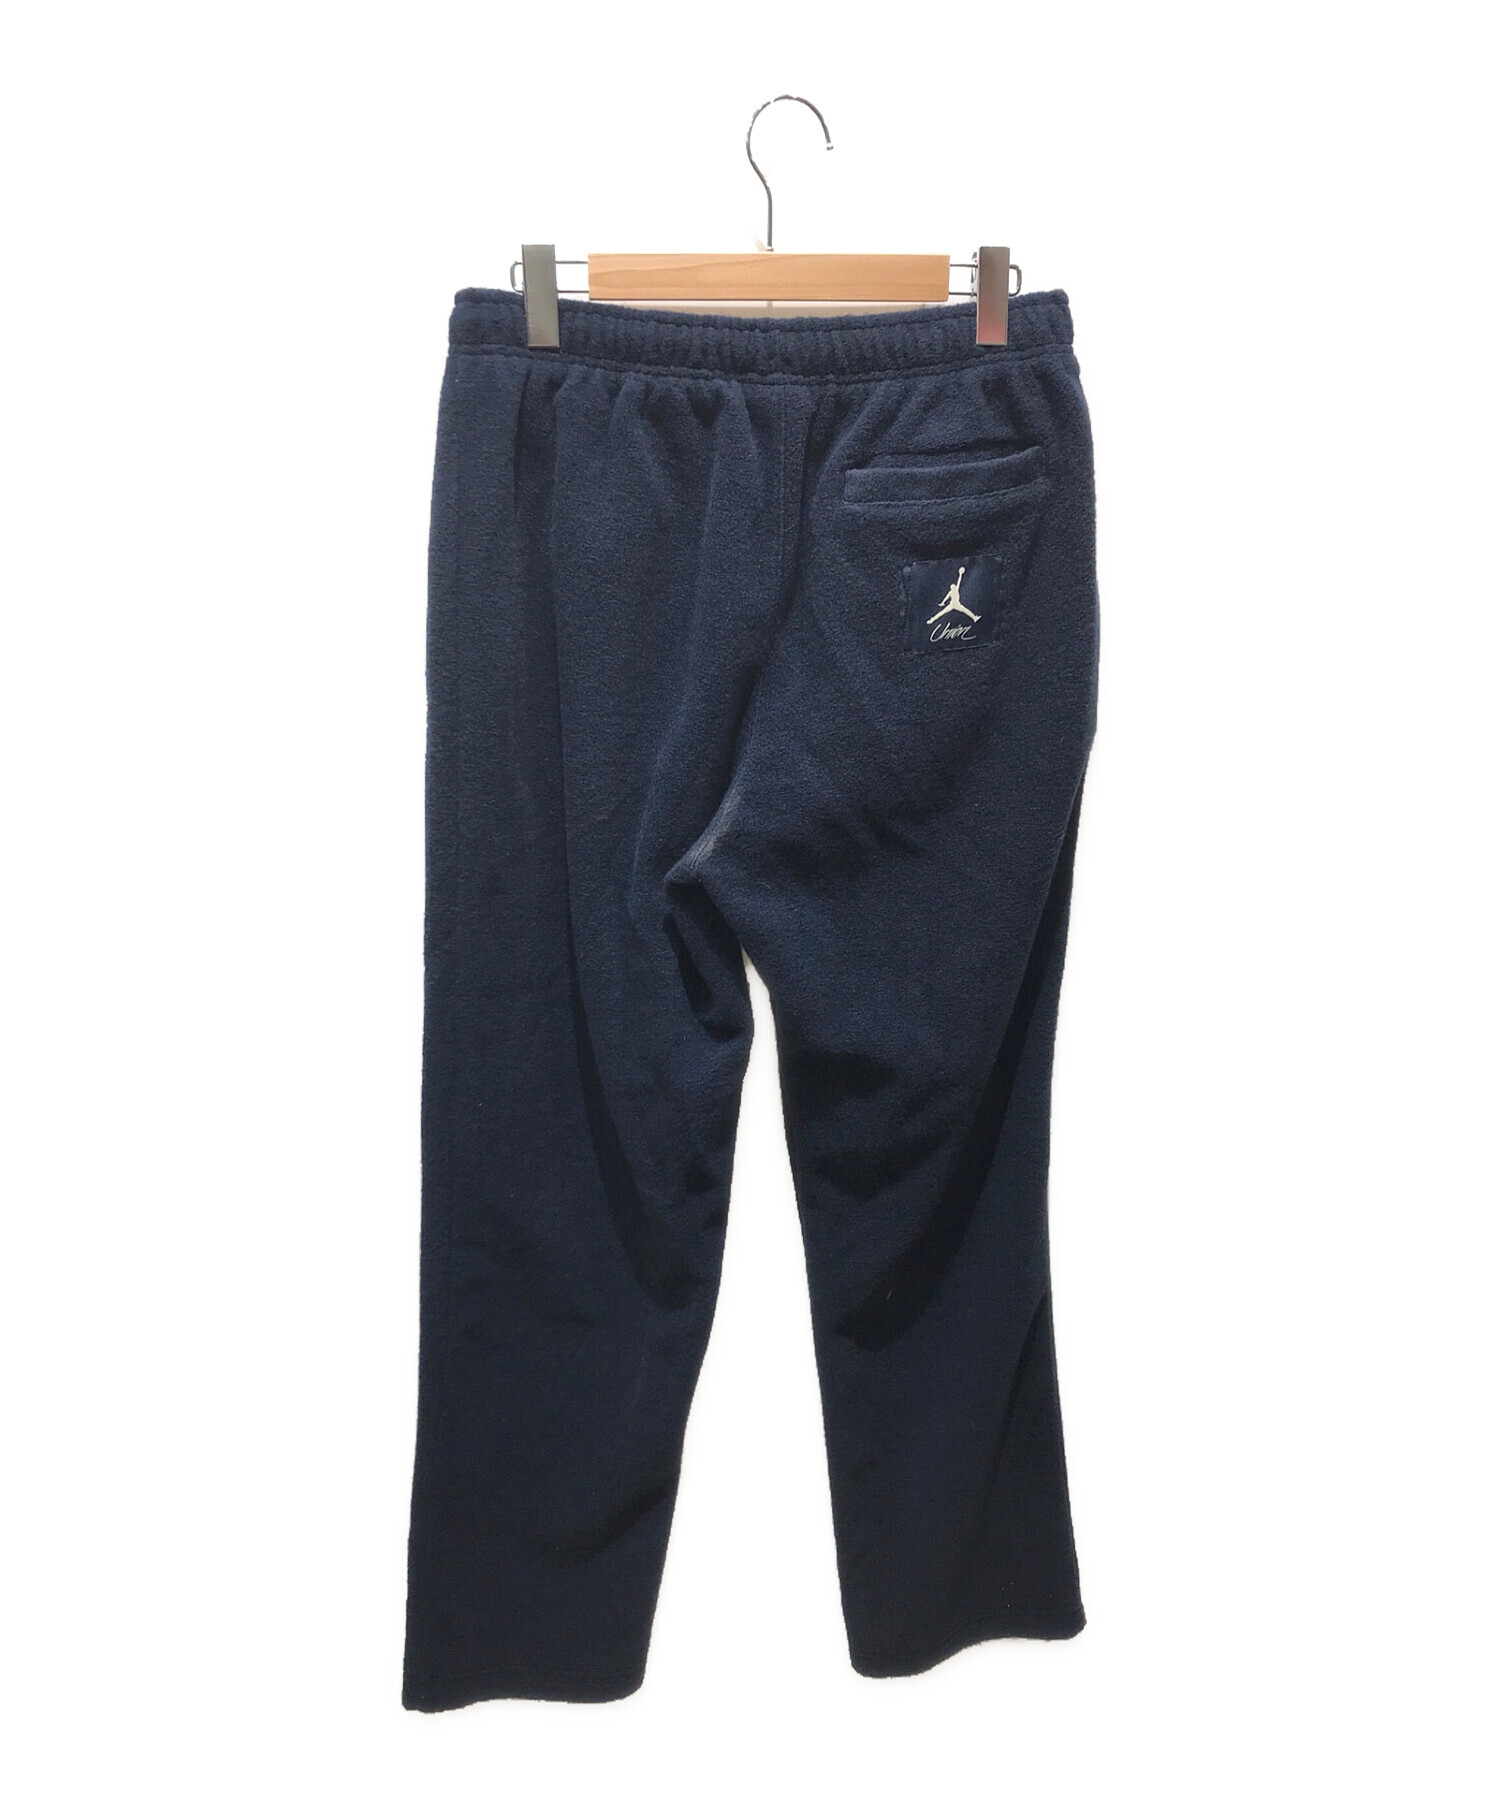 カラーブラックJordan UNION Fleece Pants メンズ パンツ Lサイズ